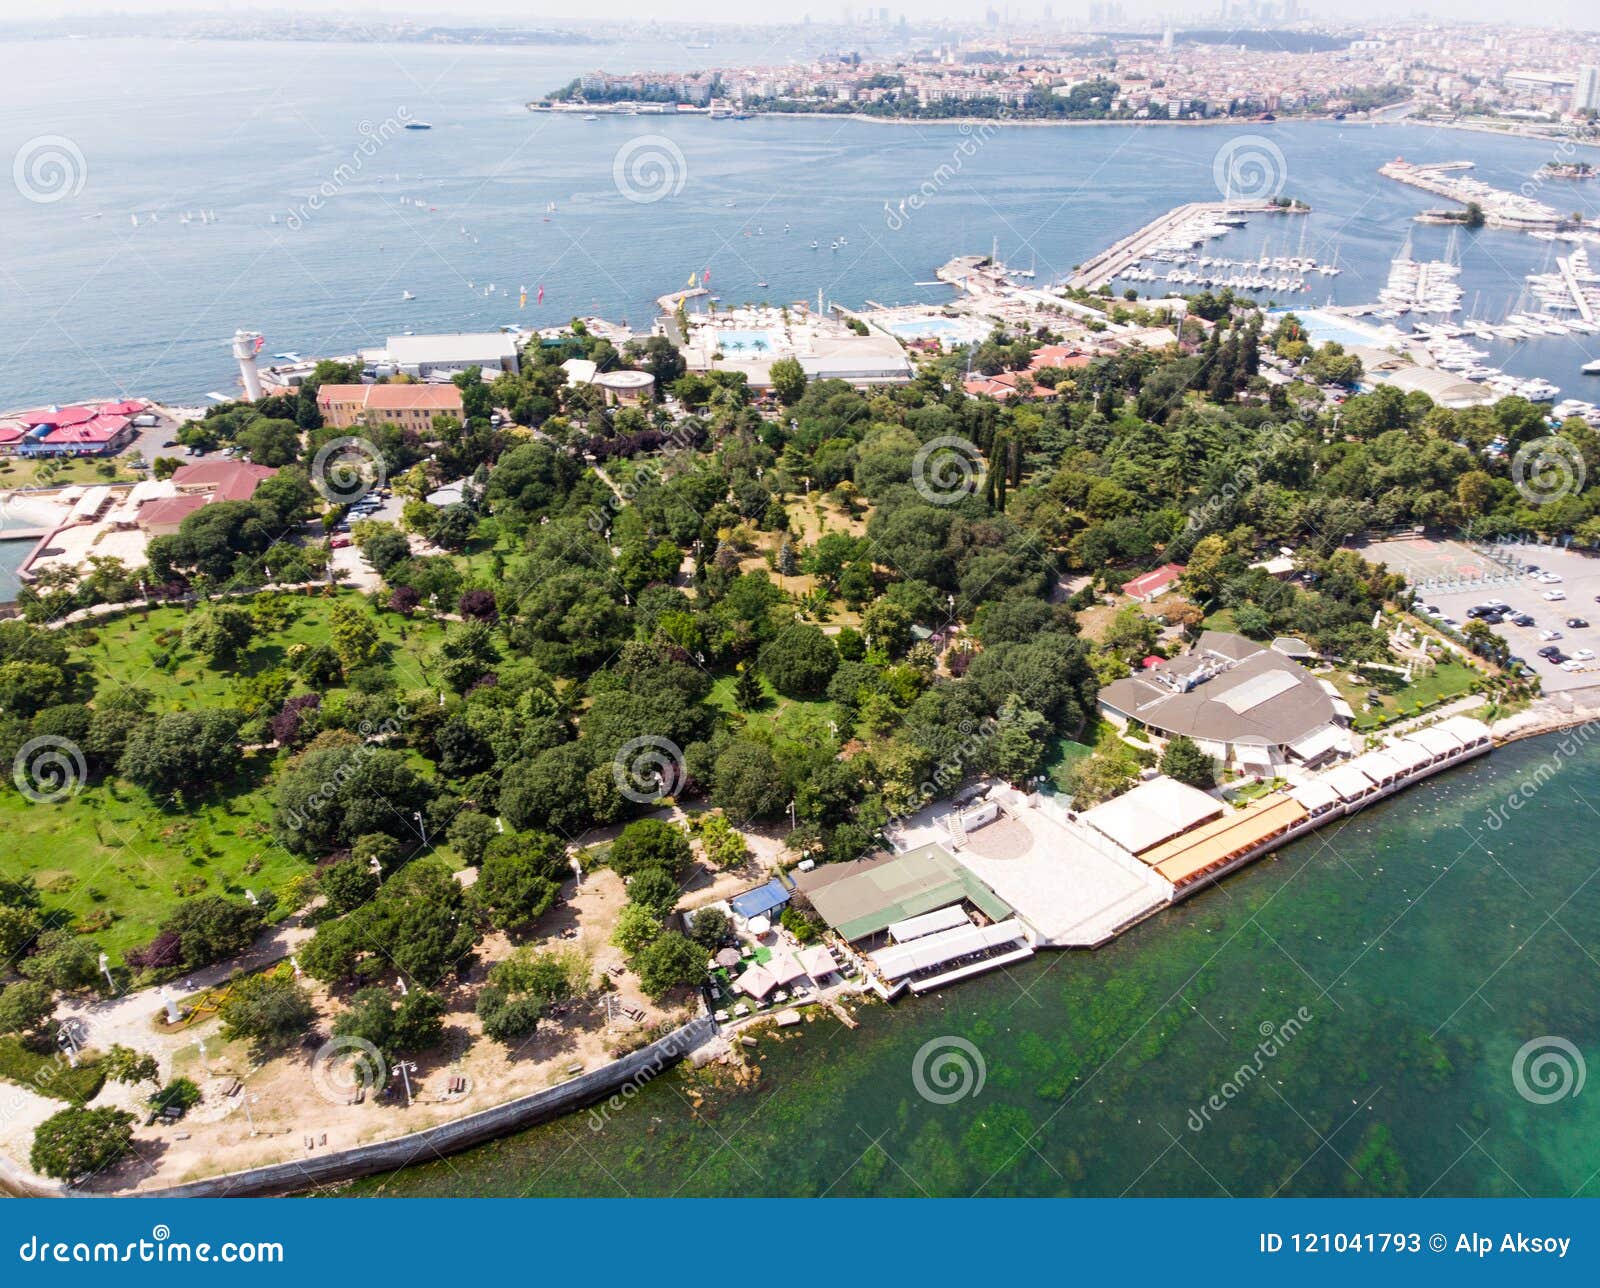 aerial drone view of fenerbahce park in kadikoy / istanbul seaside.